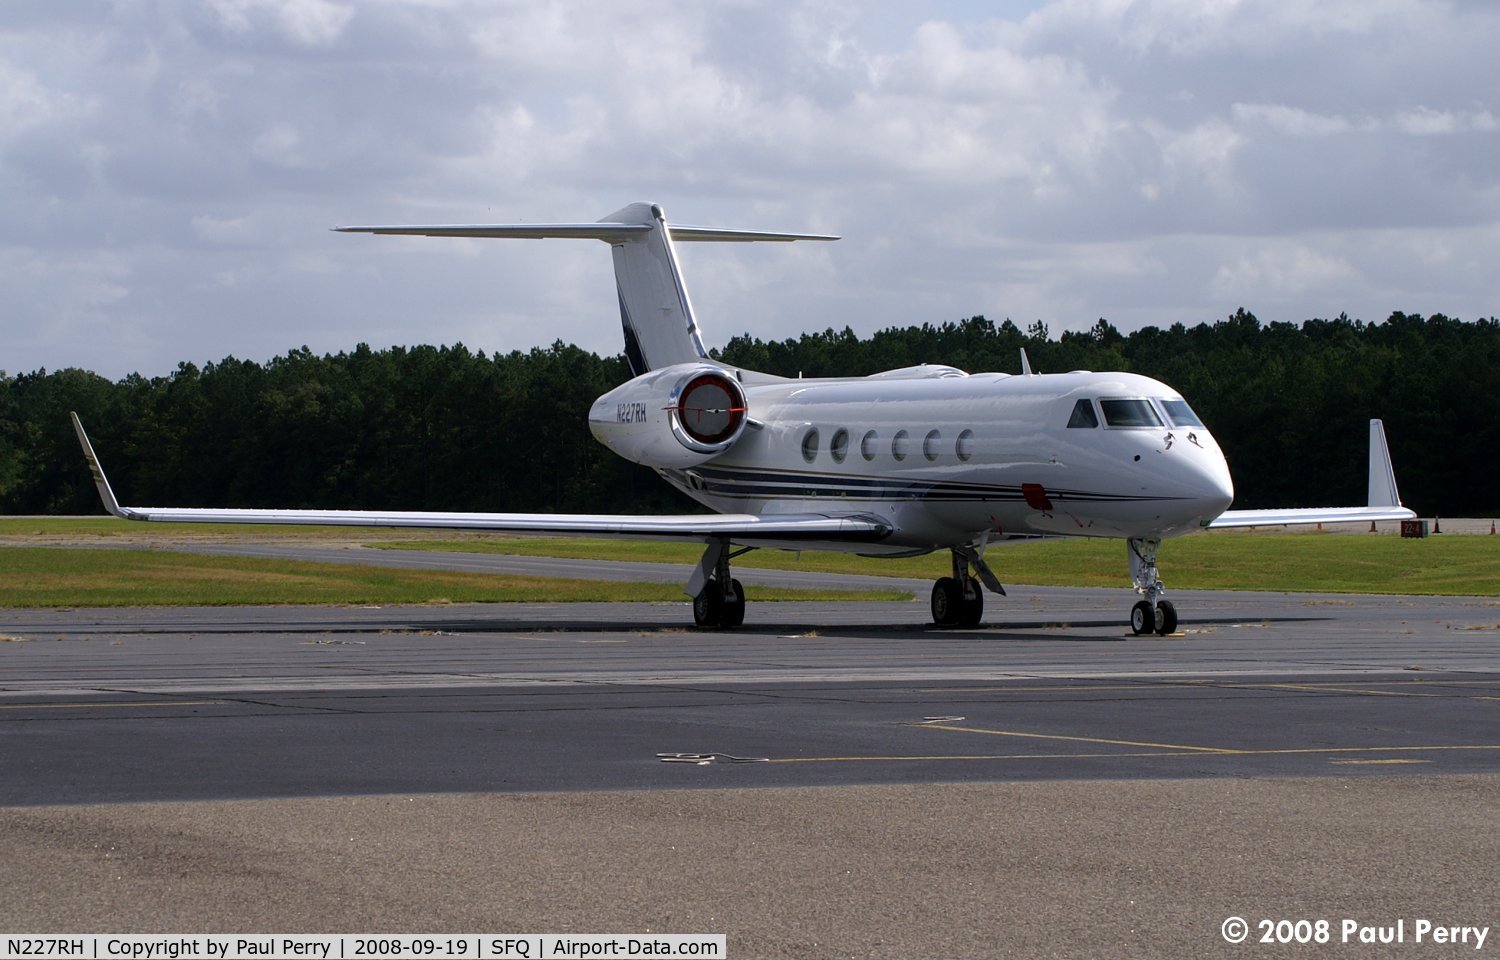 N227RH, 2007 Gulfstream Aerospace GIV-X (G450) C/N 4108, Very sleek Gulfstream